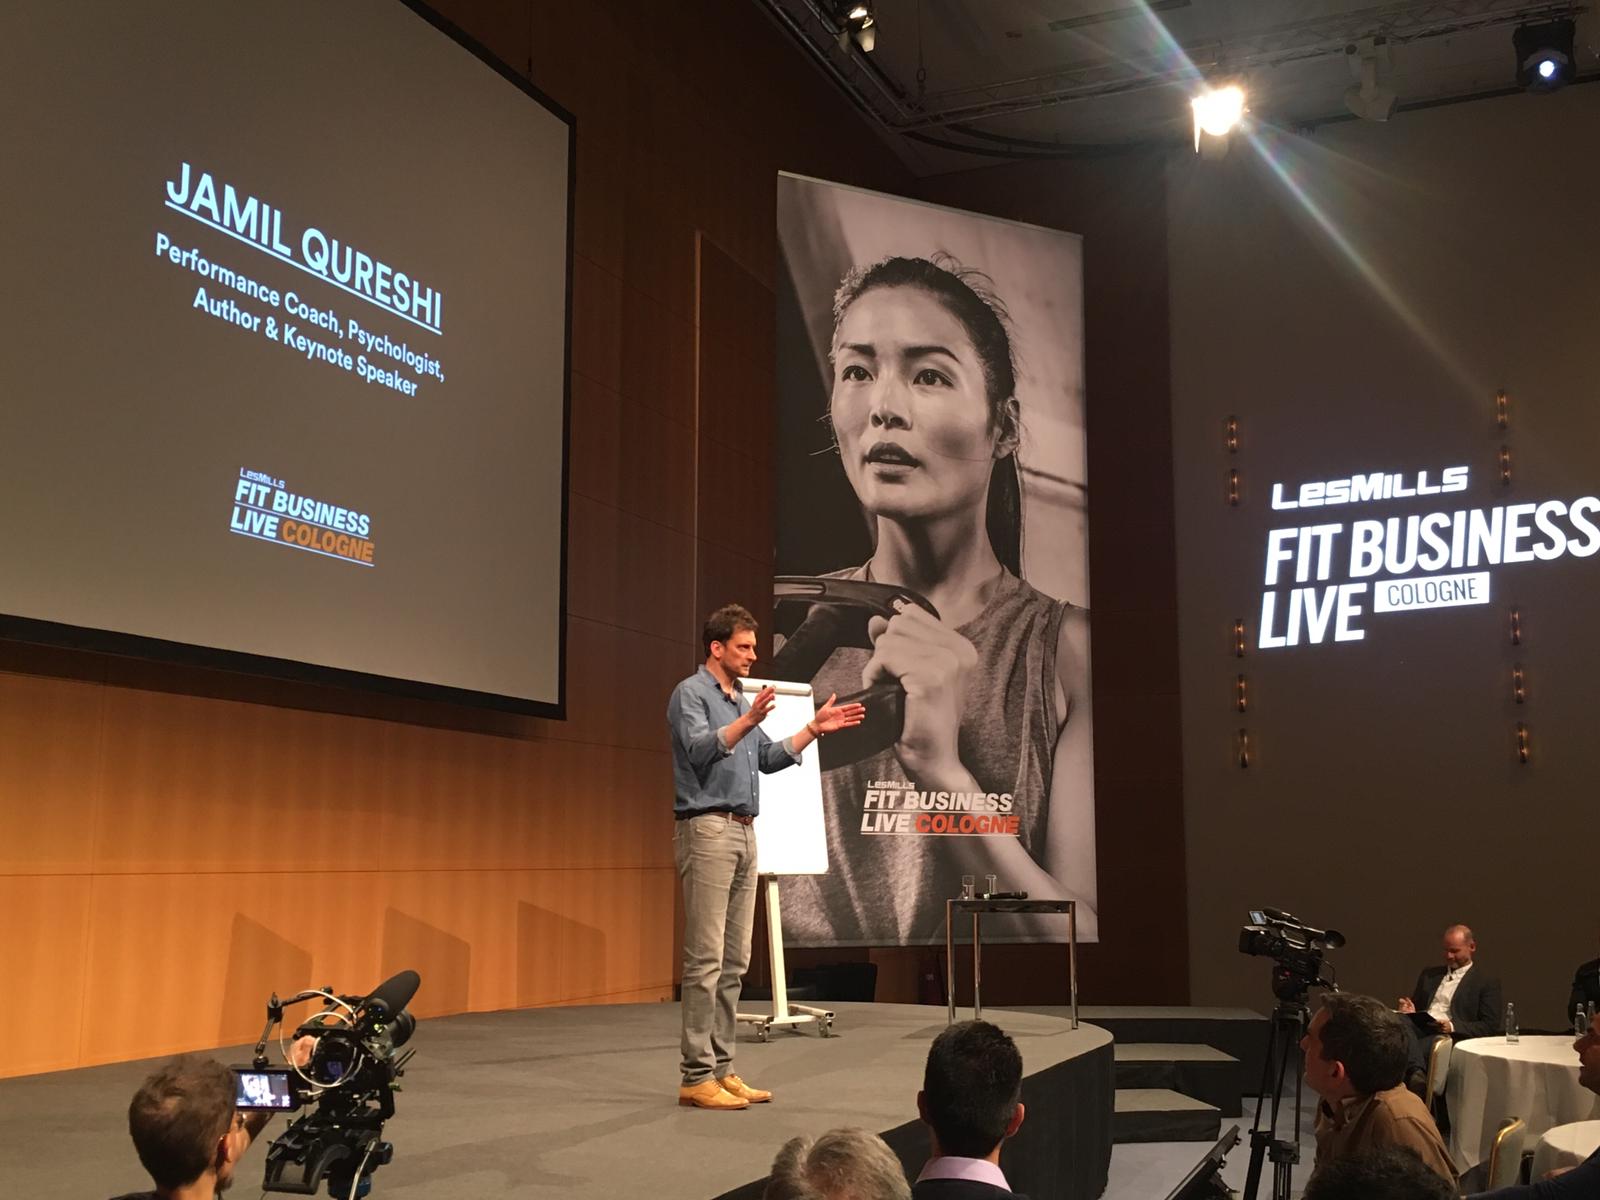 Jamil Qureshi war der Hauptredner von Fit Business Live 2019 - einer Thought Leadership Veranstaltung, die von LES MILLS auf der FIBO in Köln ausgerichtet wurde.